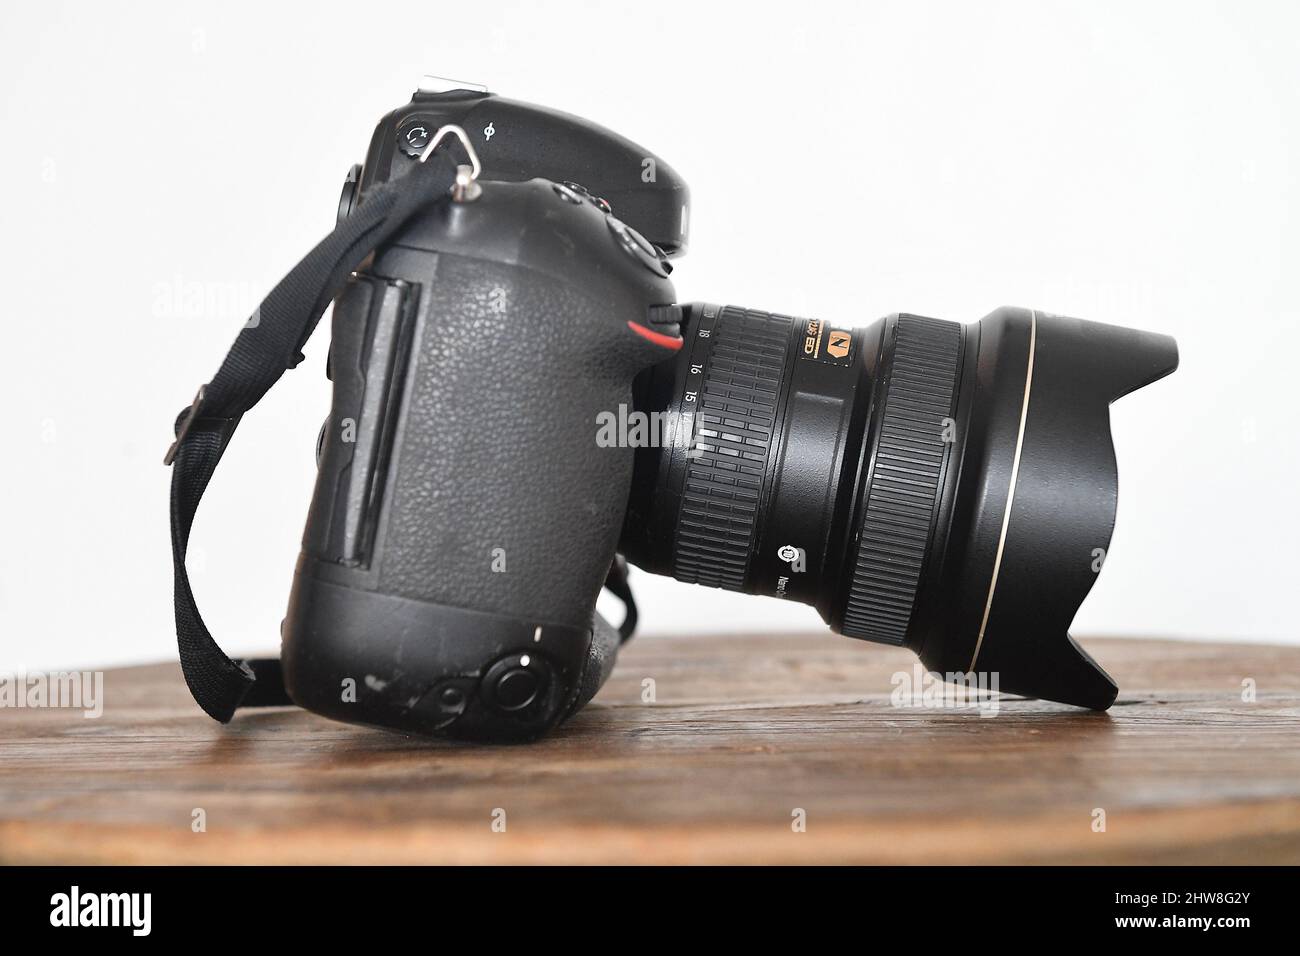 Appareil photo reflex numérique Nikon d4 avec objectif 12-24mm. Manchester, Royaume-Uni. Banque D'Images